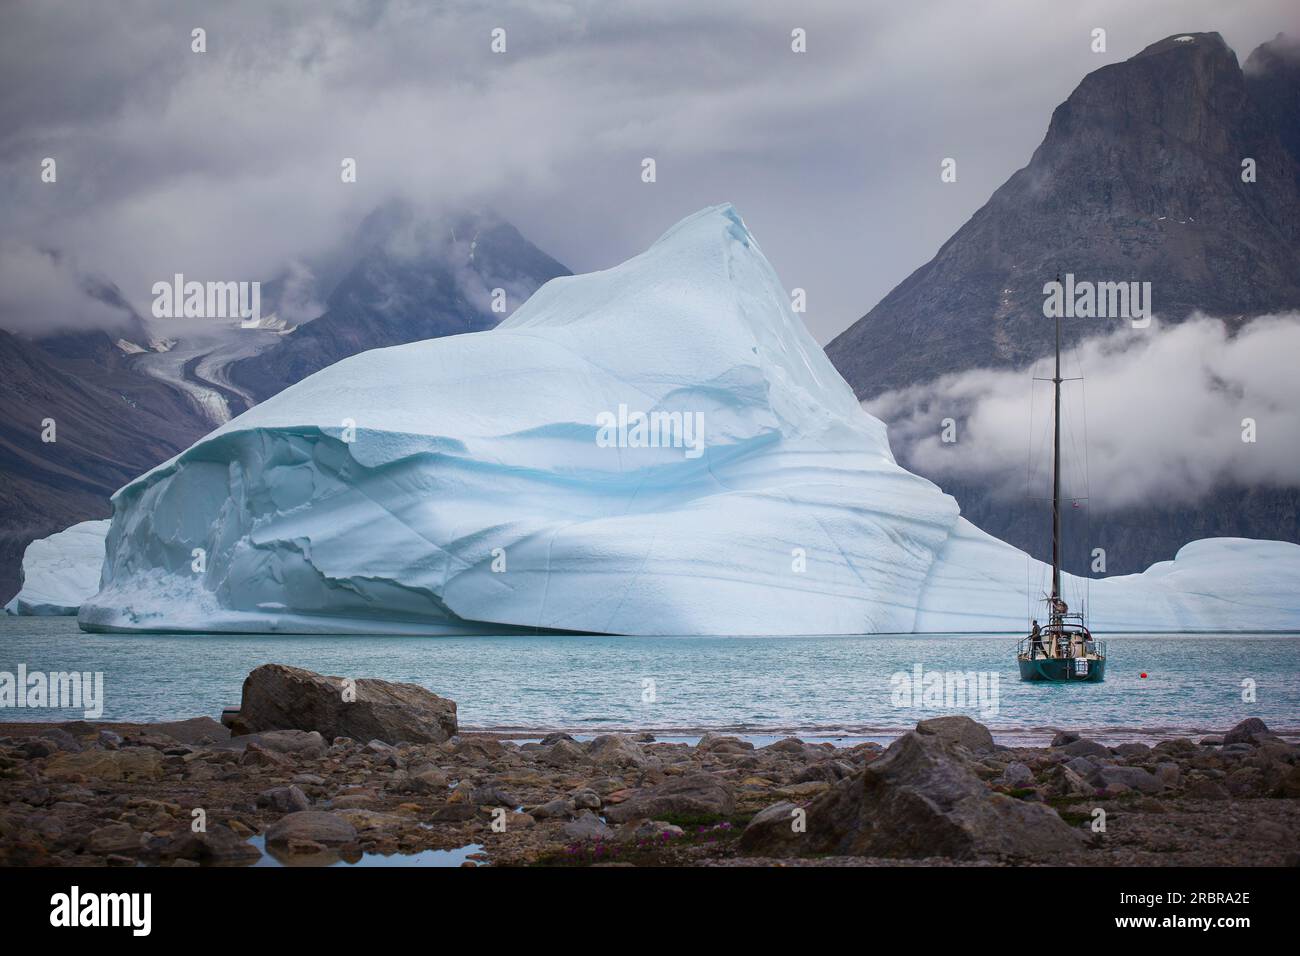 Barca a vela ancorata in un fiordo in Groenlandia. Circondato da iceberg. splendide montagne e ghiacciai sullo sfondo. L'uomo sta pescando dalla barca. Foto Stock